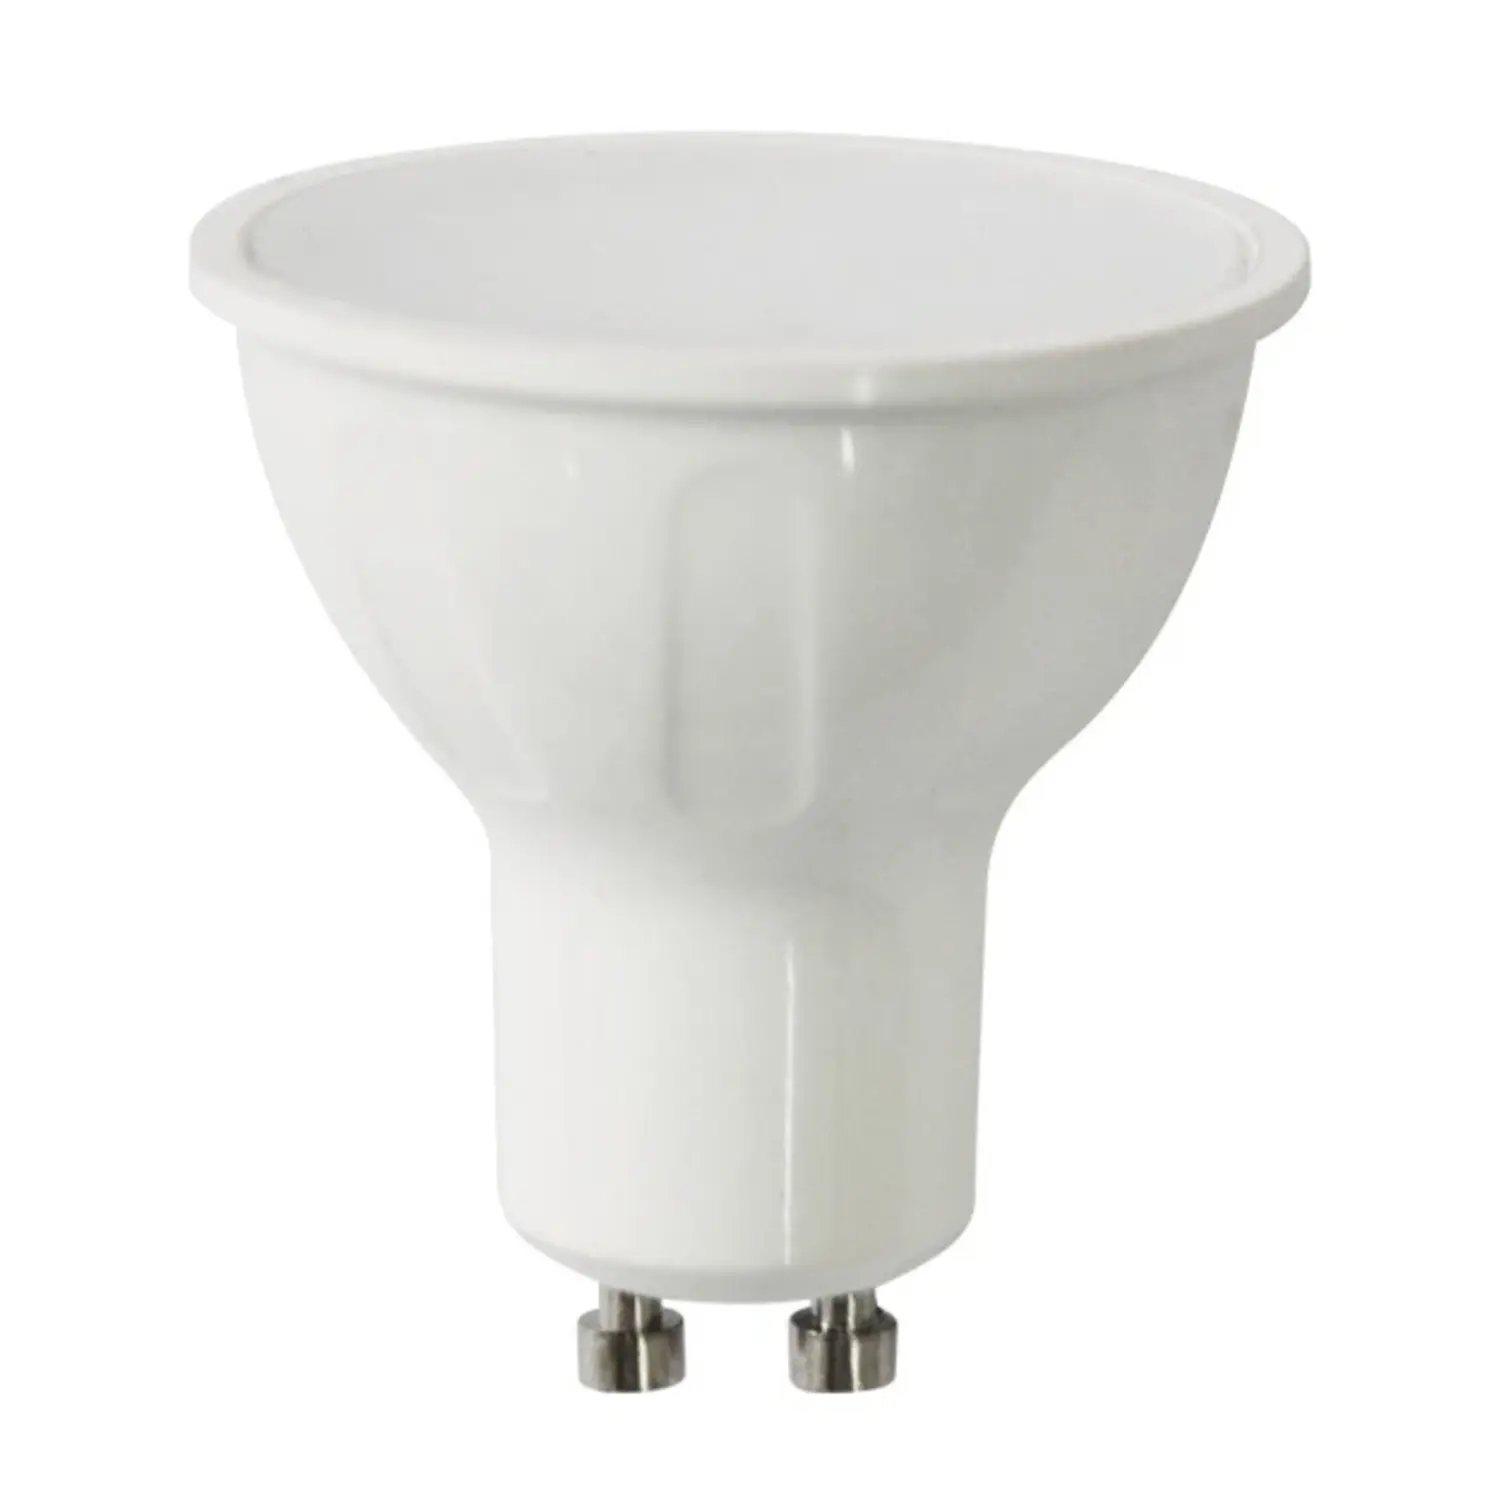 immagine del prodotto lampadina a led 6 watt GU10 CE bianco freddo 25000 ore 220-240 volt 120° aig 177768